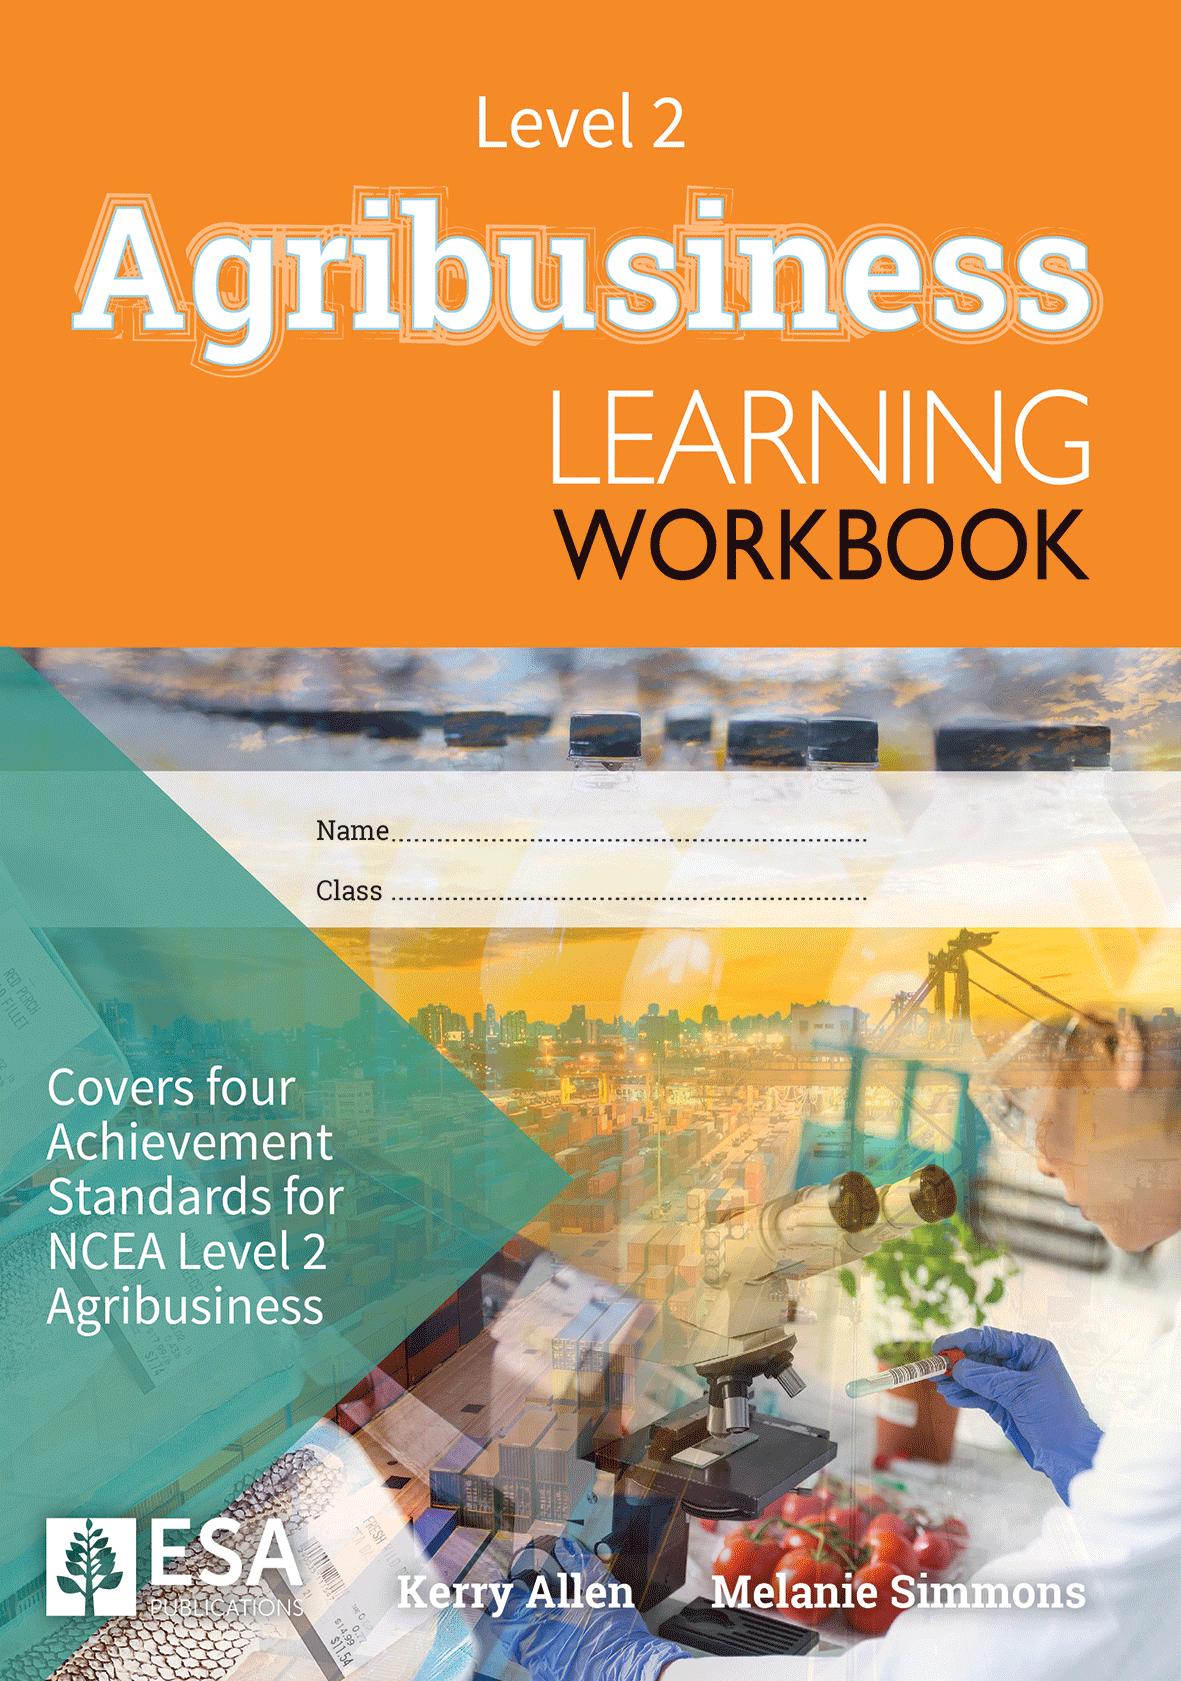 Level 2 Agribusiness Learning Workbook